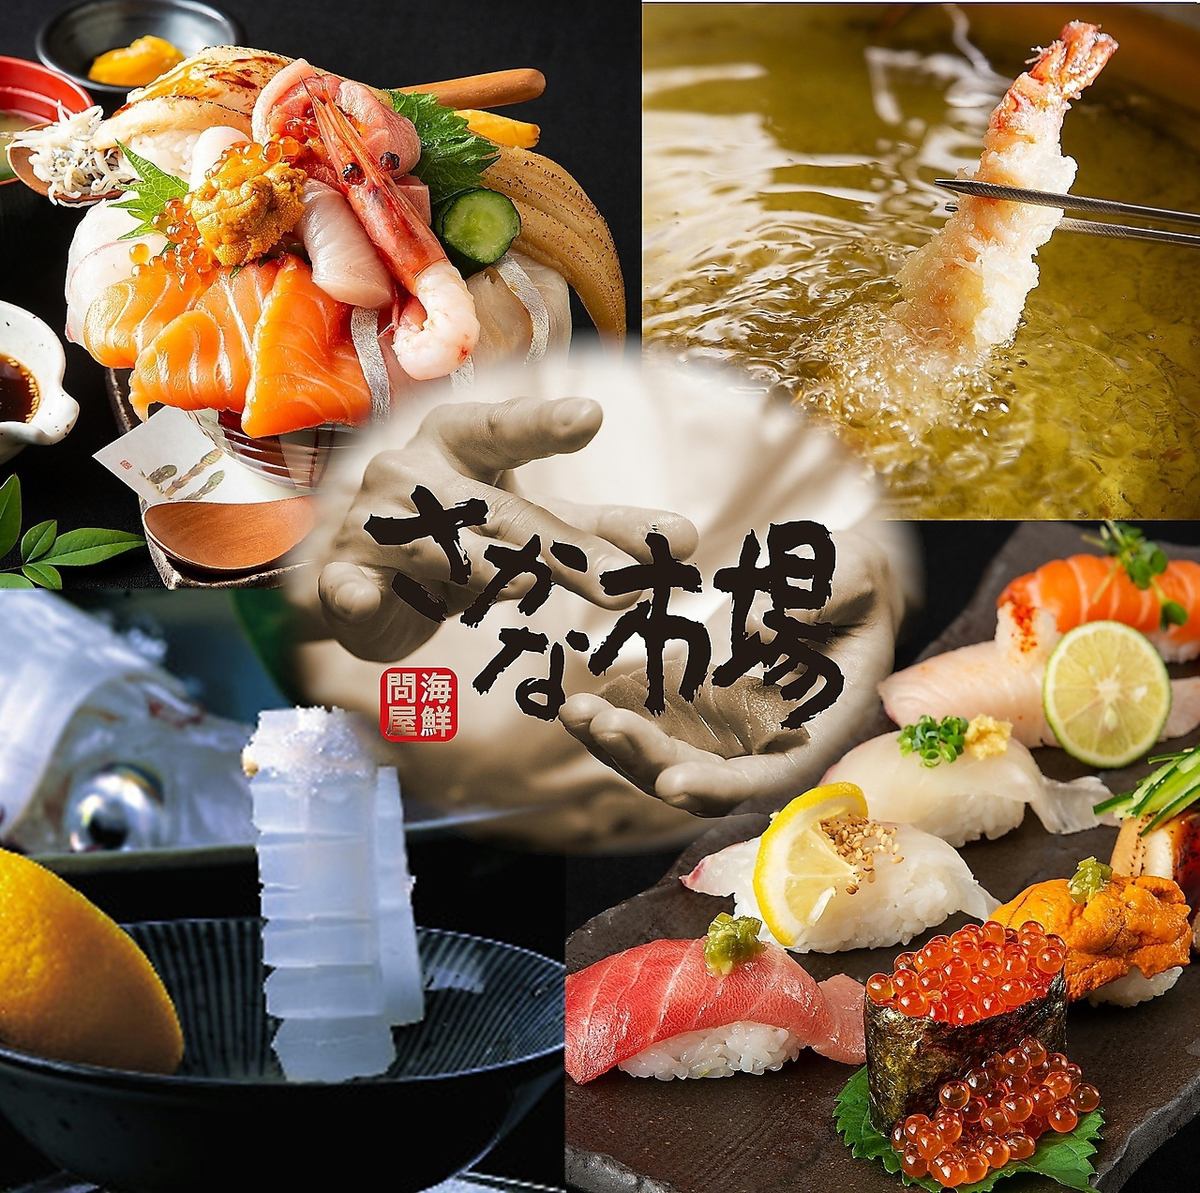 鱼类市场特产“乌贼Ikizukuri”等美味鱼类的价格合理